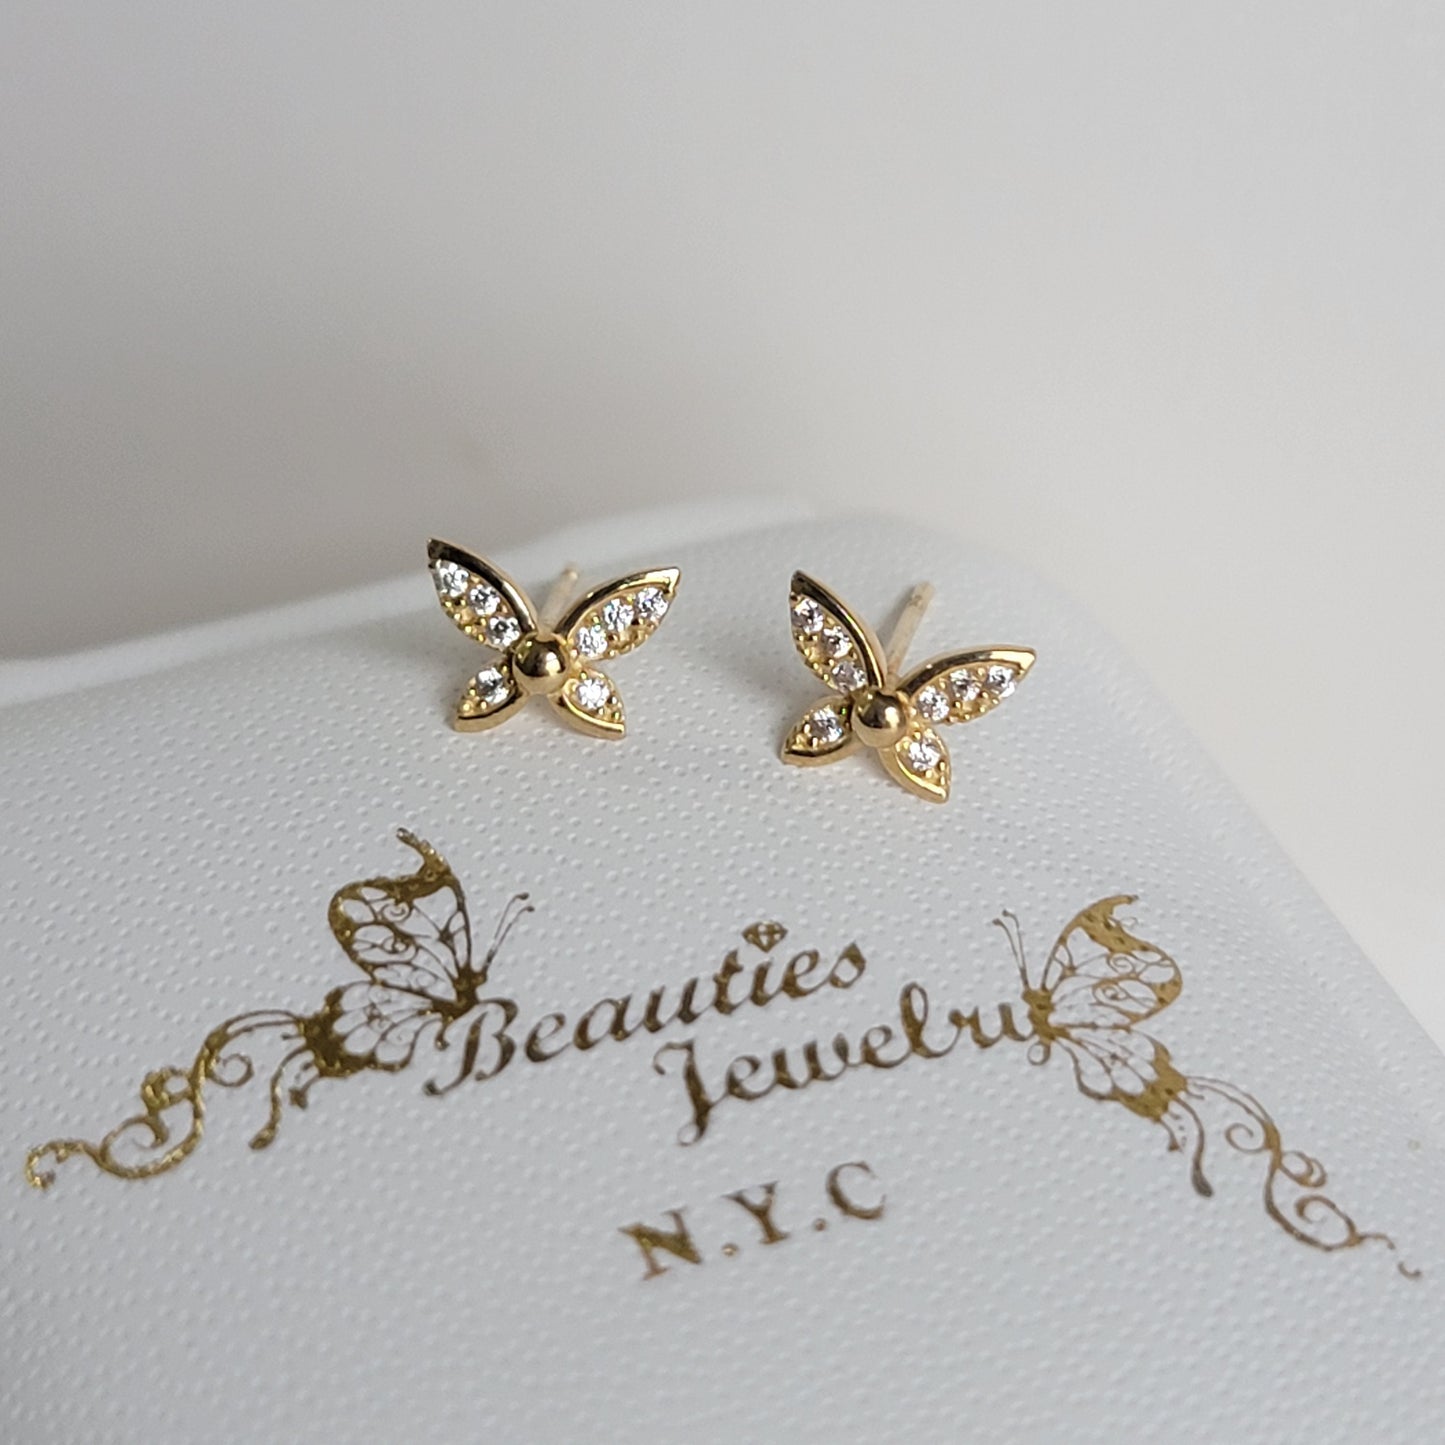 Diamond Butterfly Earrings, 14k Gold Earrings , Minimalist Earrings, Diamond Earrings for Girls, Butterfly Stud Earrings, Dainty Earrings